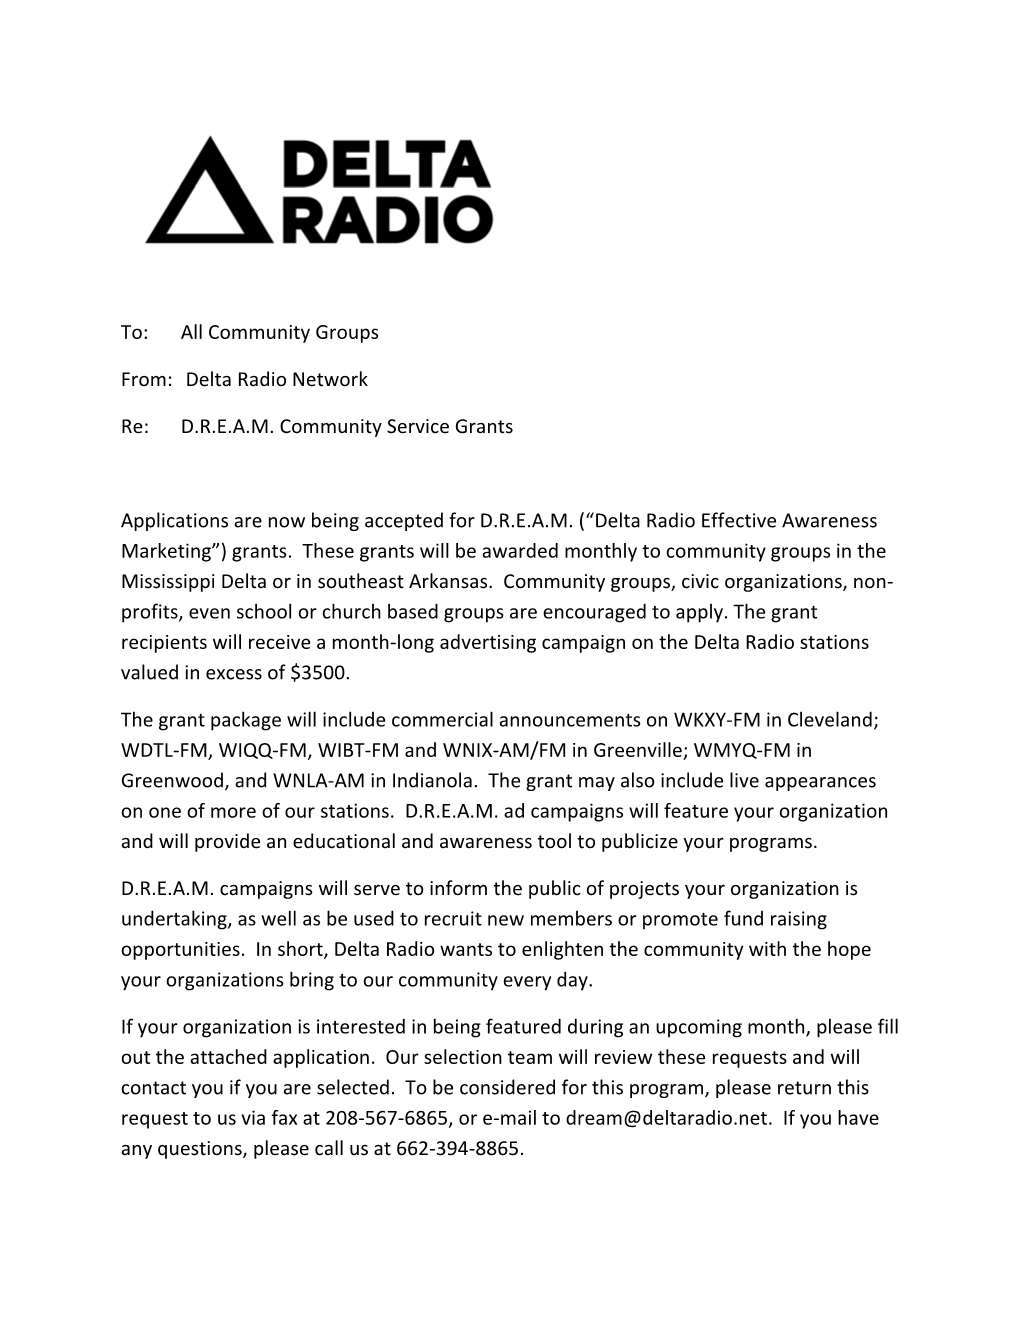 Delta Radio Network Re: DREAM Community Service Grants